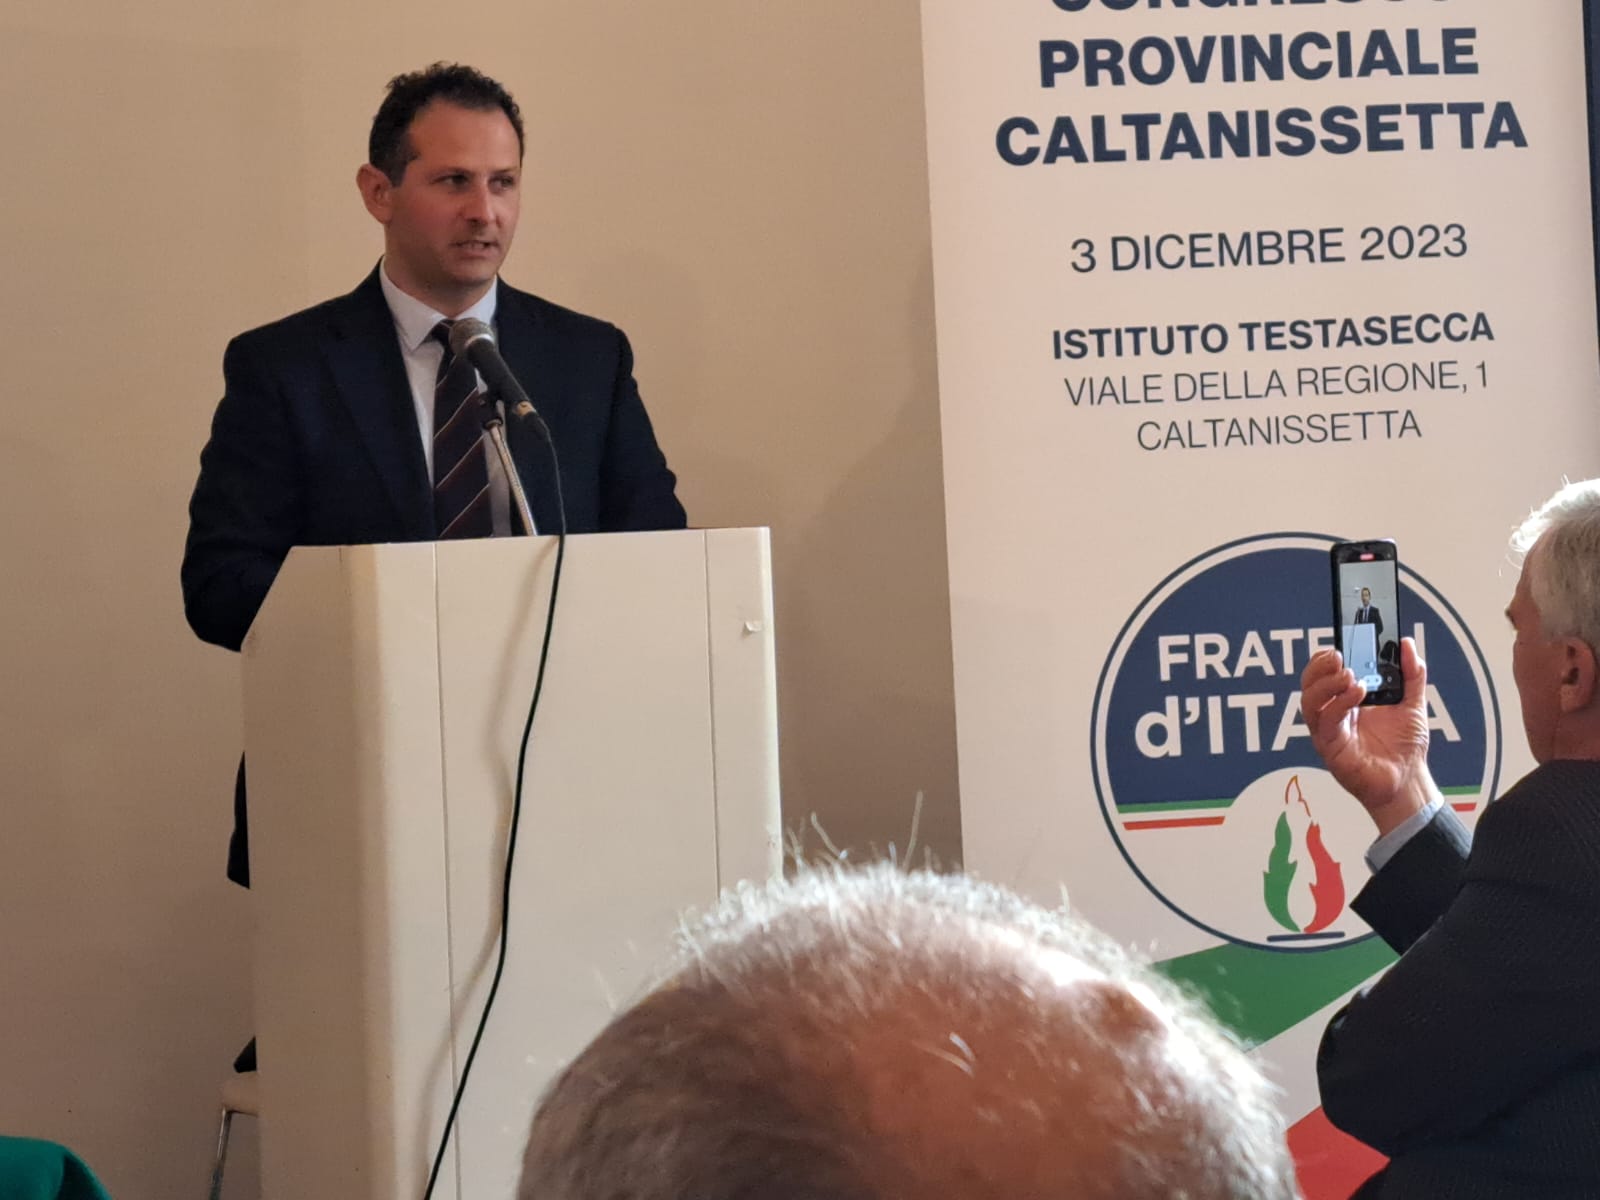 Caltanissetta, Fratelli d’Italia completa il direttivo: nominati altri 5 componenti